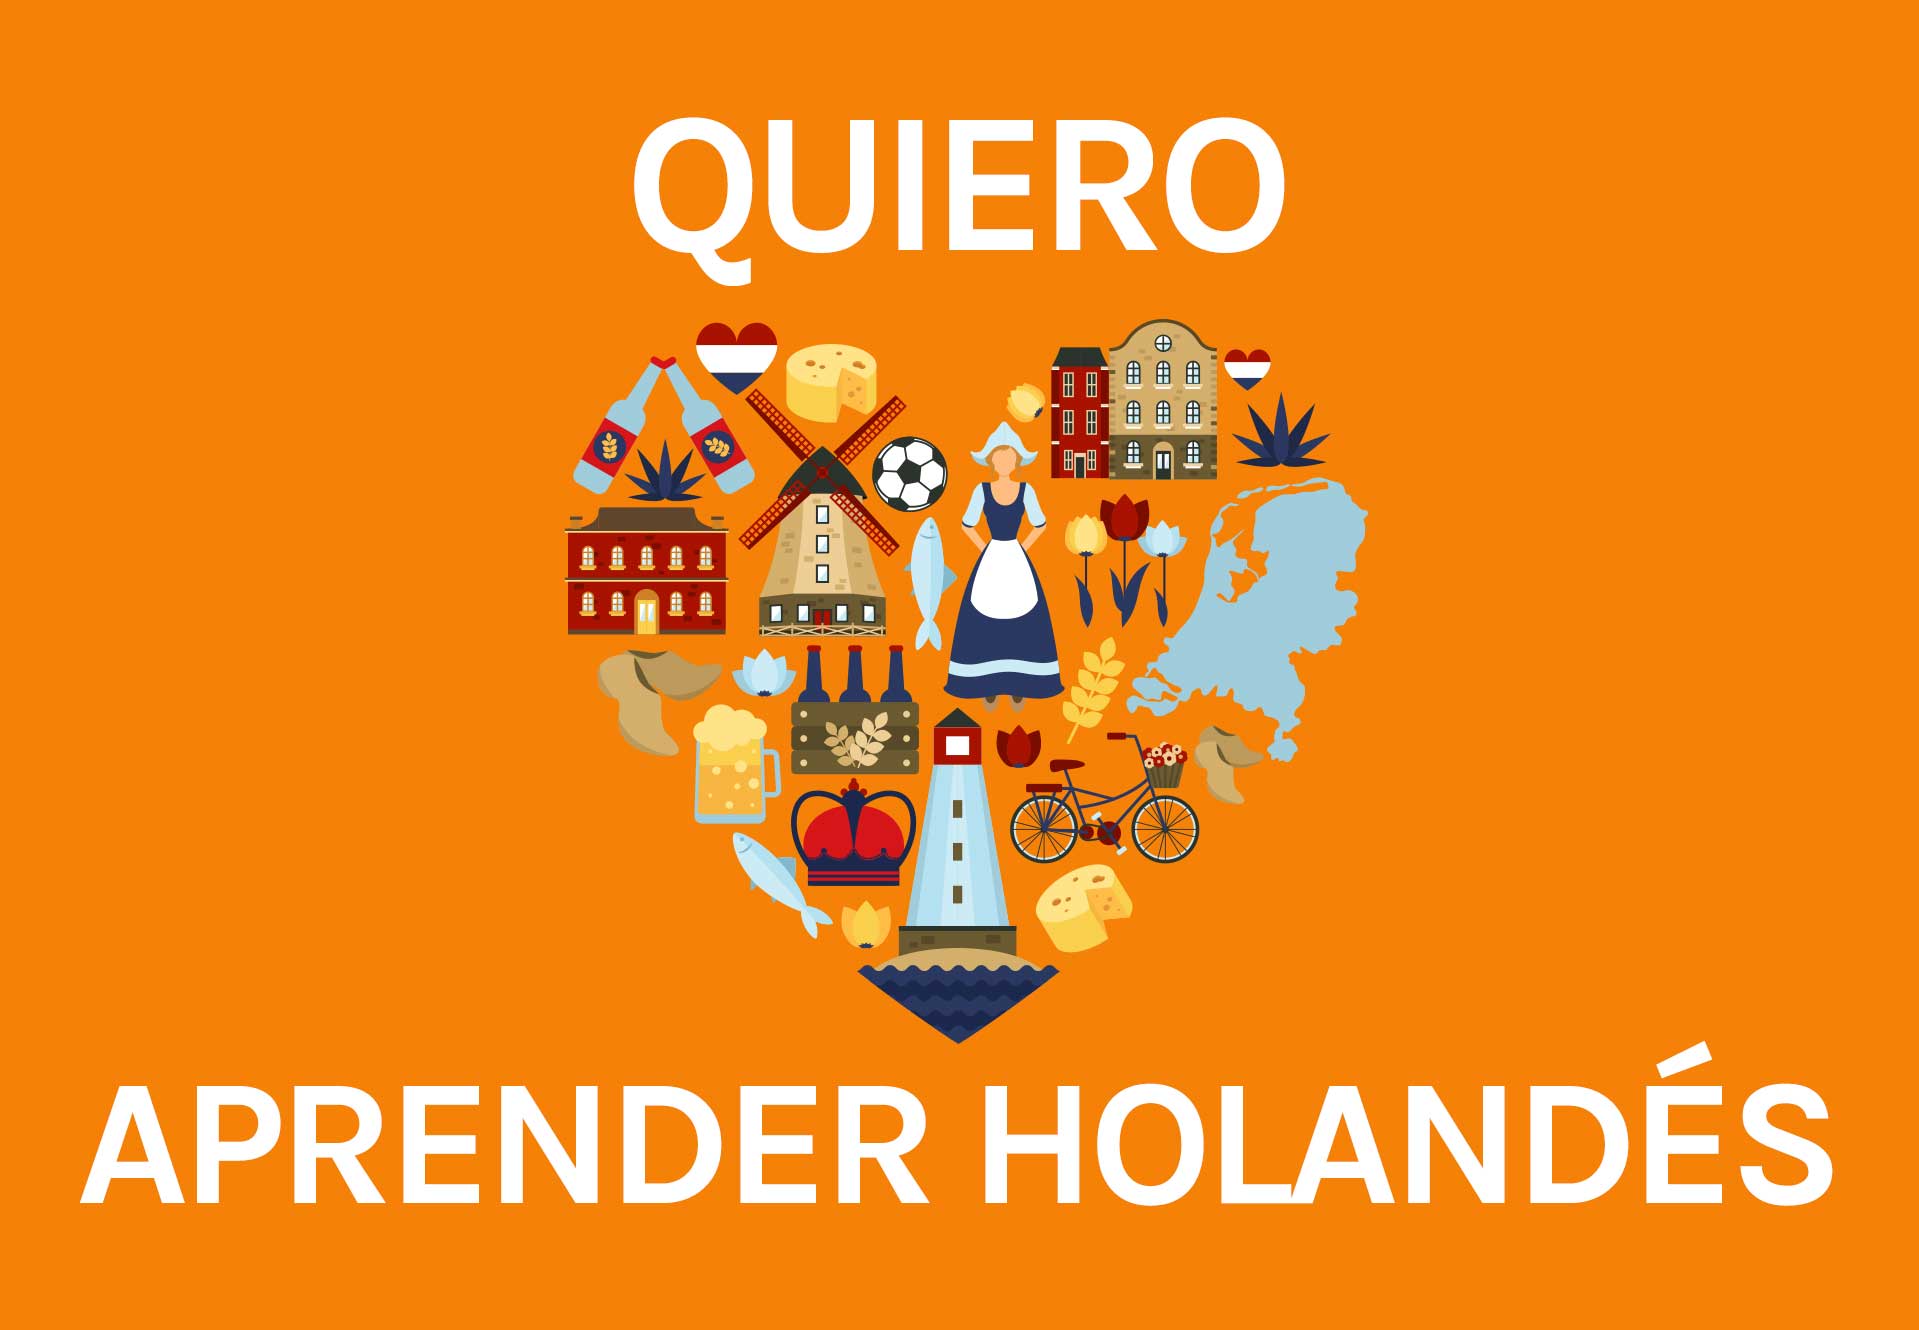 Aprender Holandes